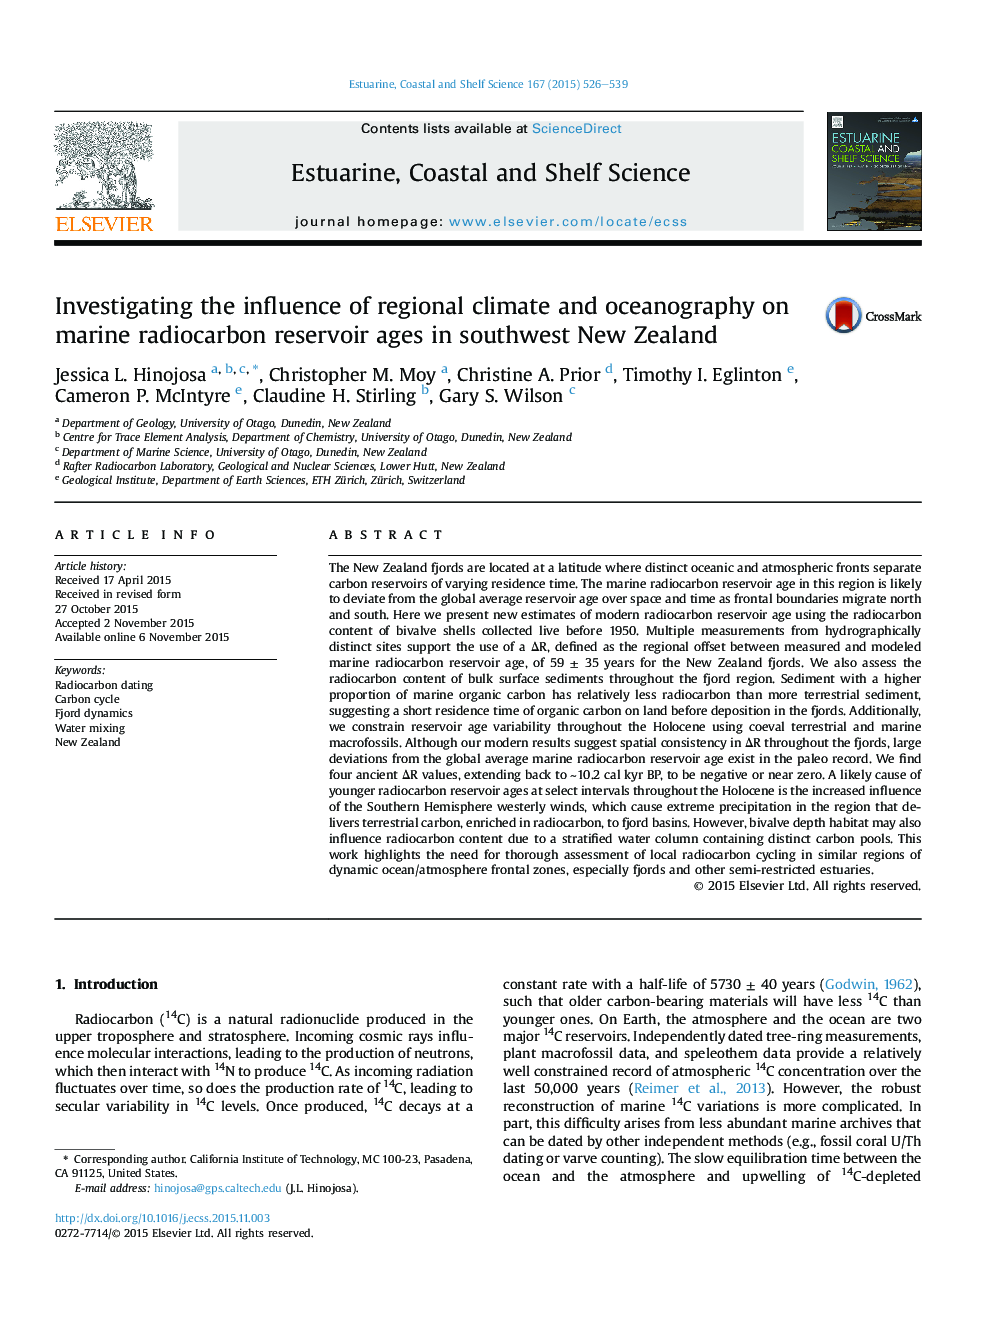 بررسی تاثیر آب و هوای منطقه و اقیانوس شناسی در سن های مخزن رادیو کربن دریایی در جنوب غربی نیوزیلند 